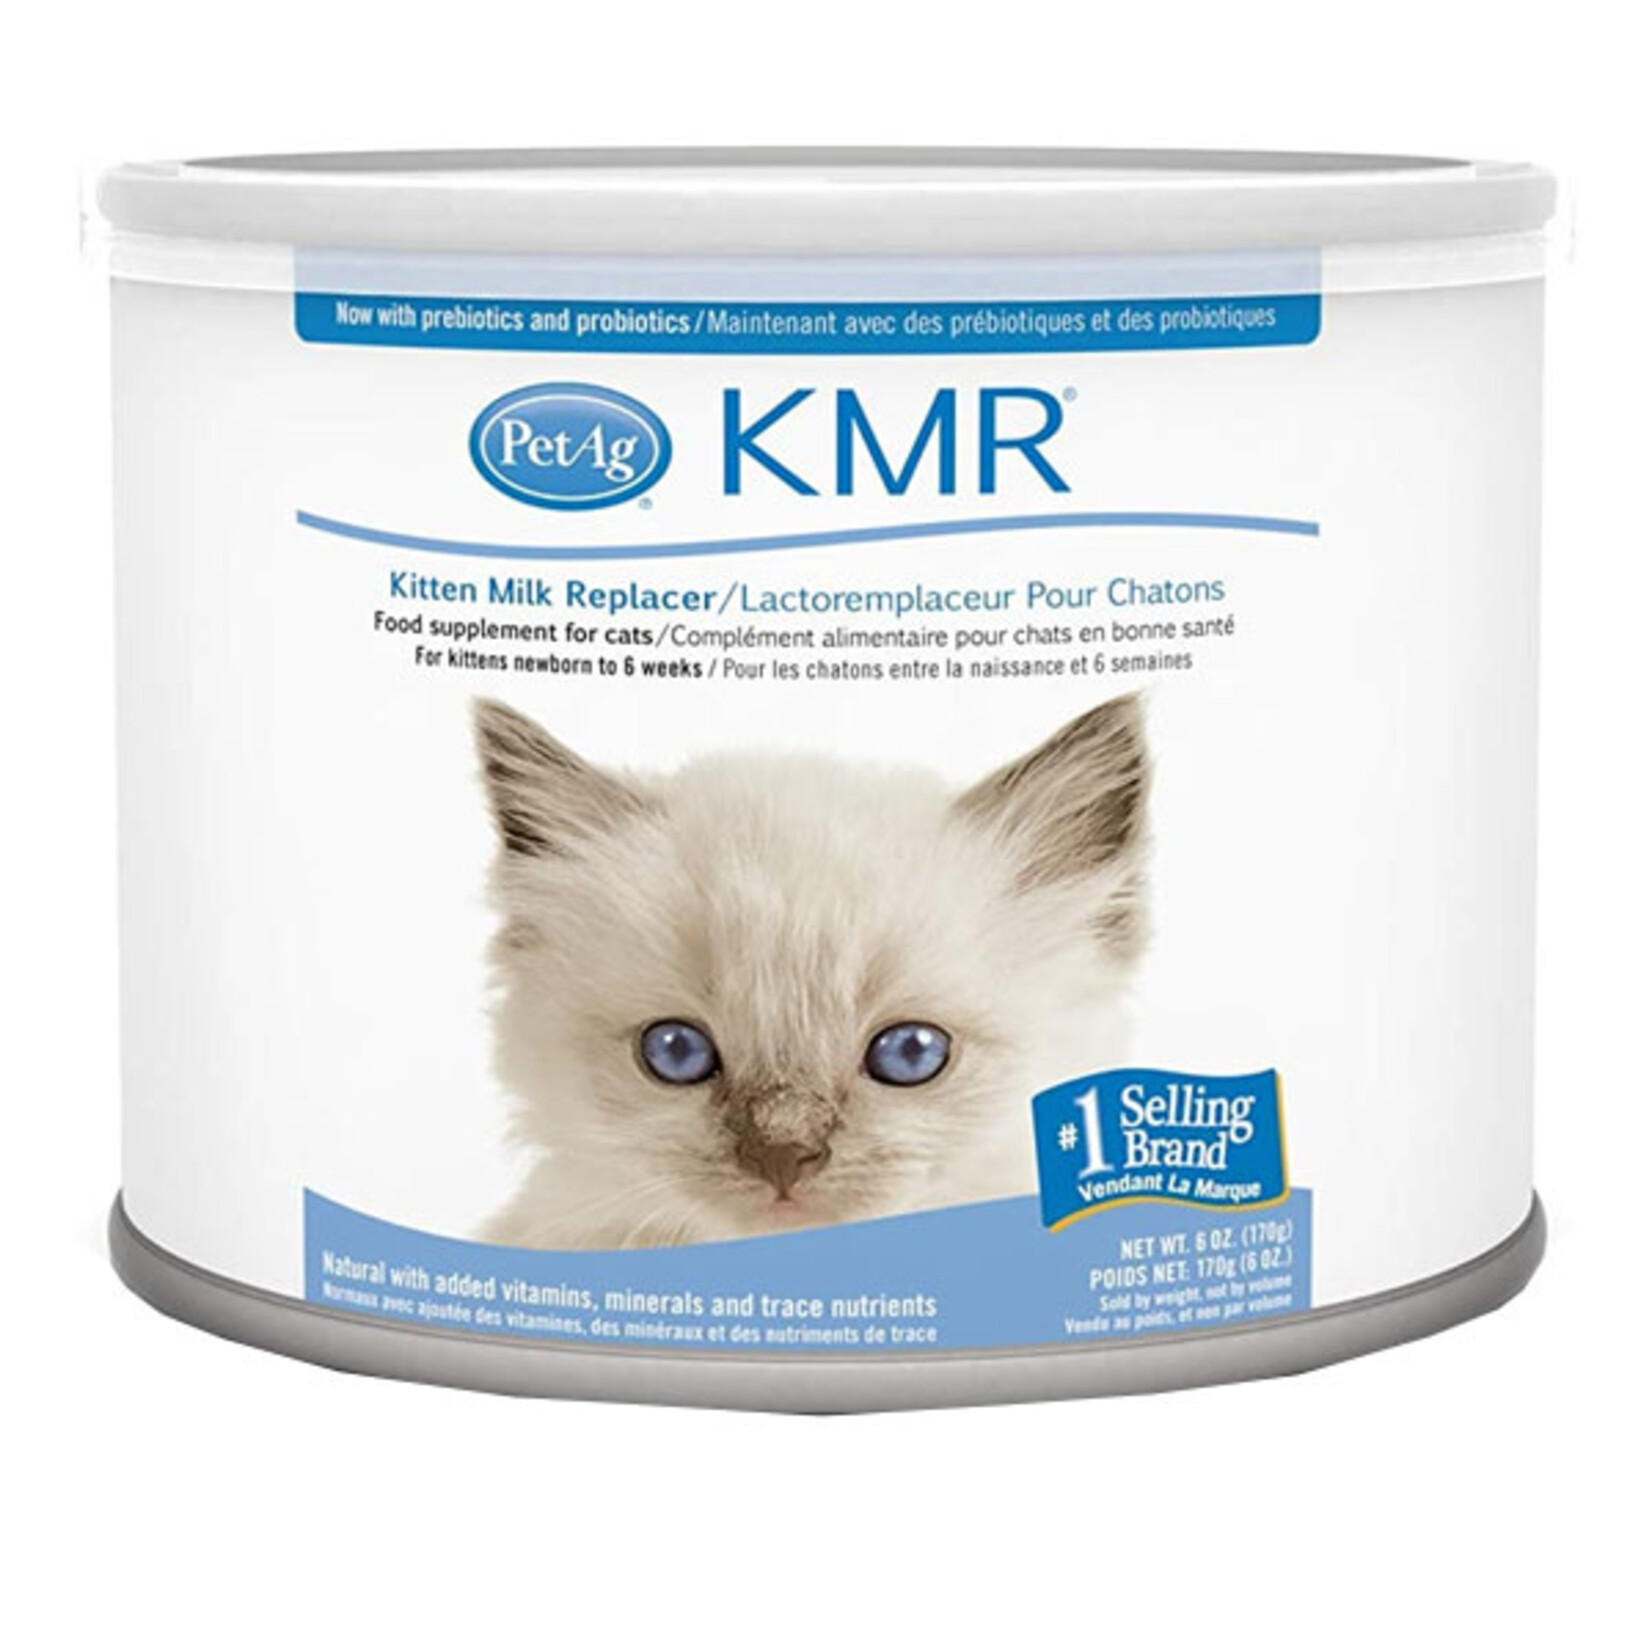 PetAg Powder Kitten Milk Replacer KMR 6oz